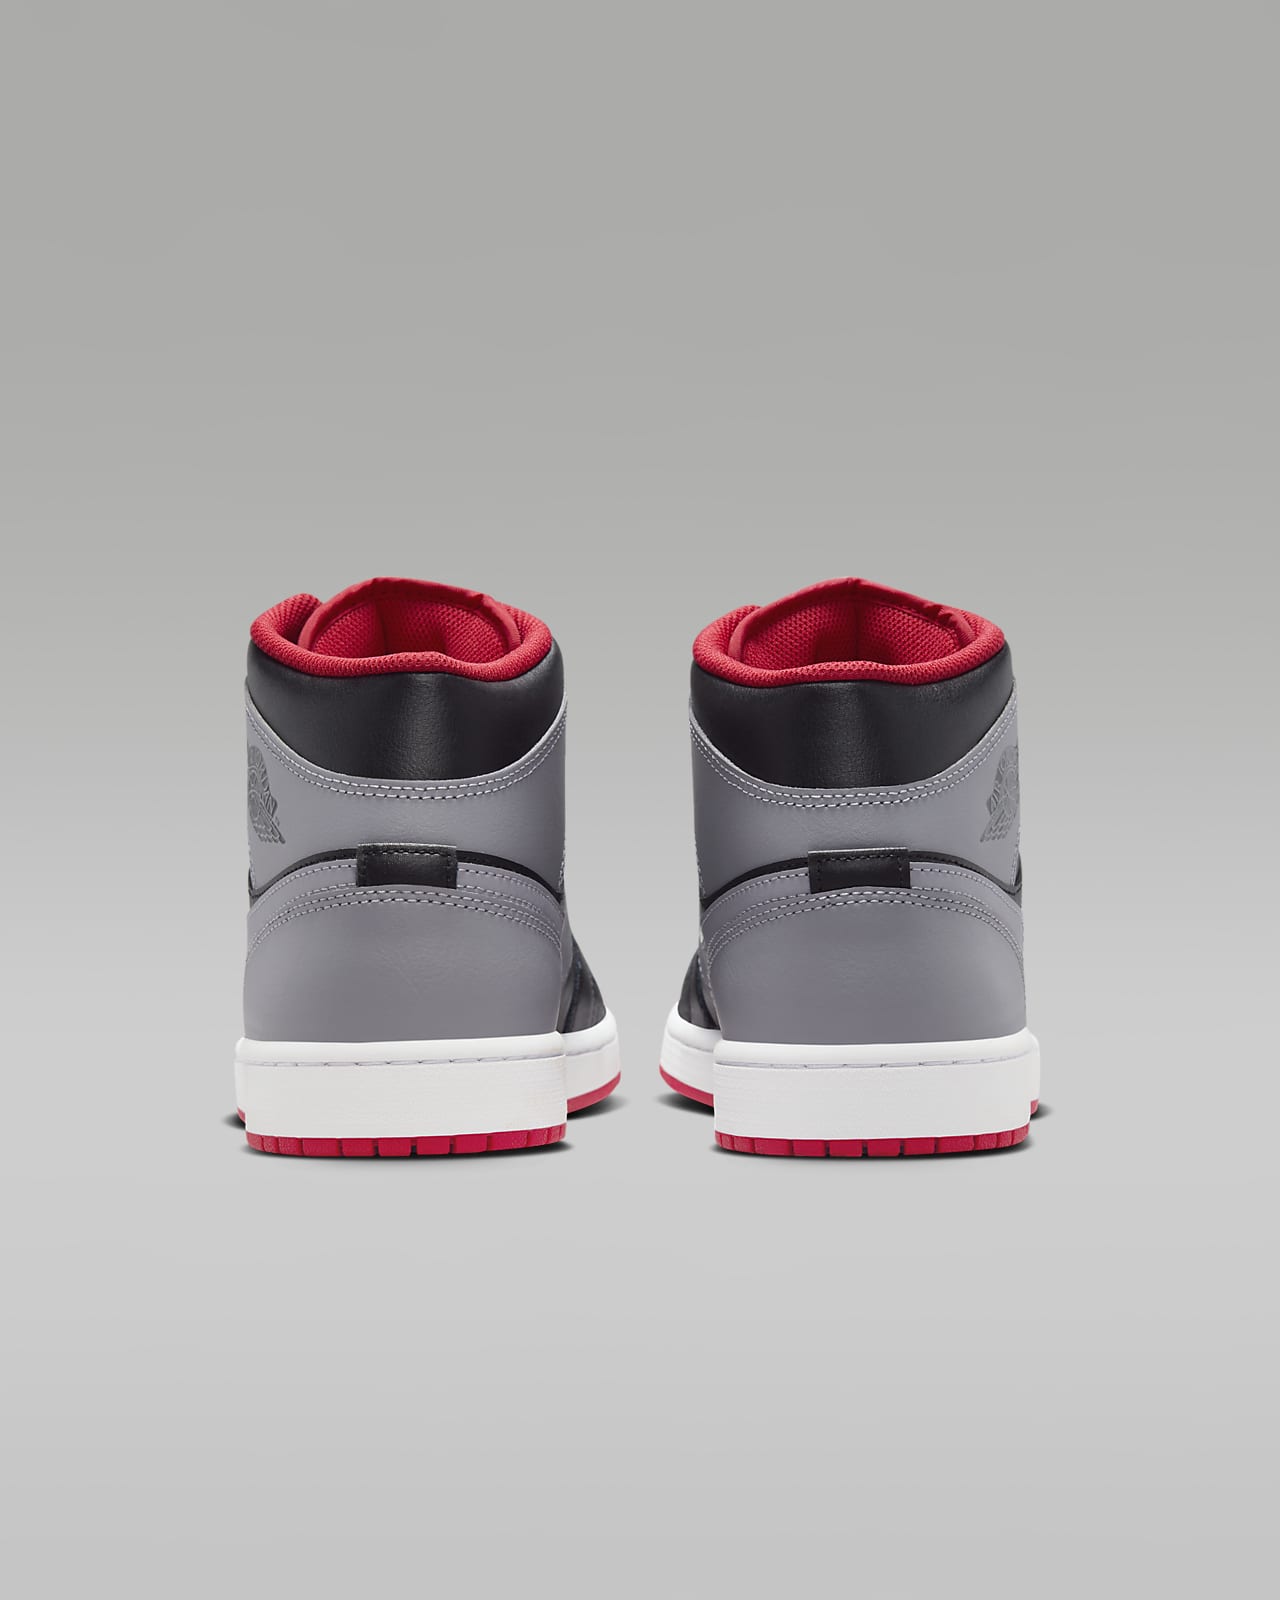 Tenis Air Jordan 1 Mid para hombre, para entrenar, de cuero sintético,  color blanco, rojo y negro, talla 9.5 de EE. UU., Blanco rojo negro (White  Gym